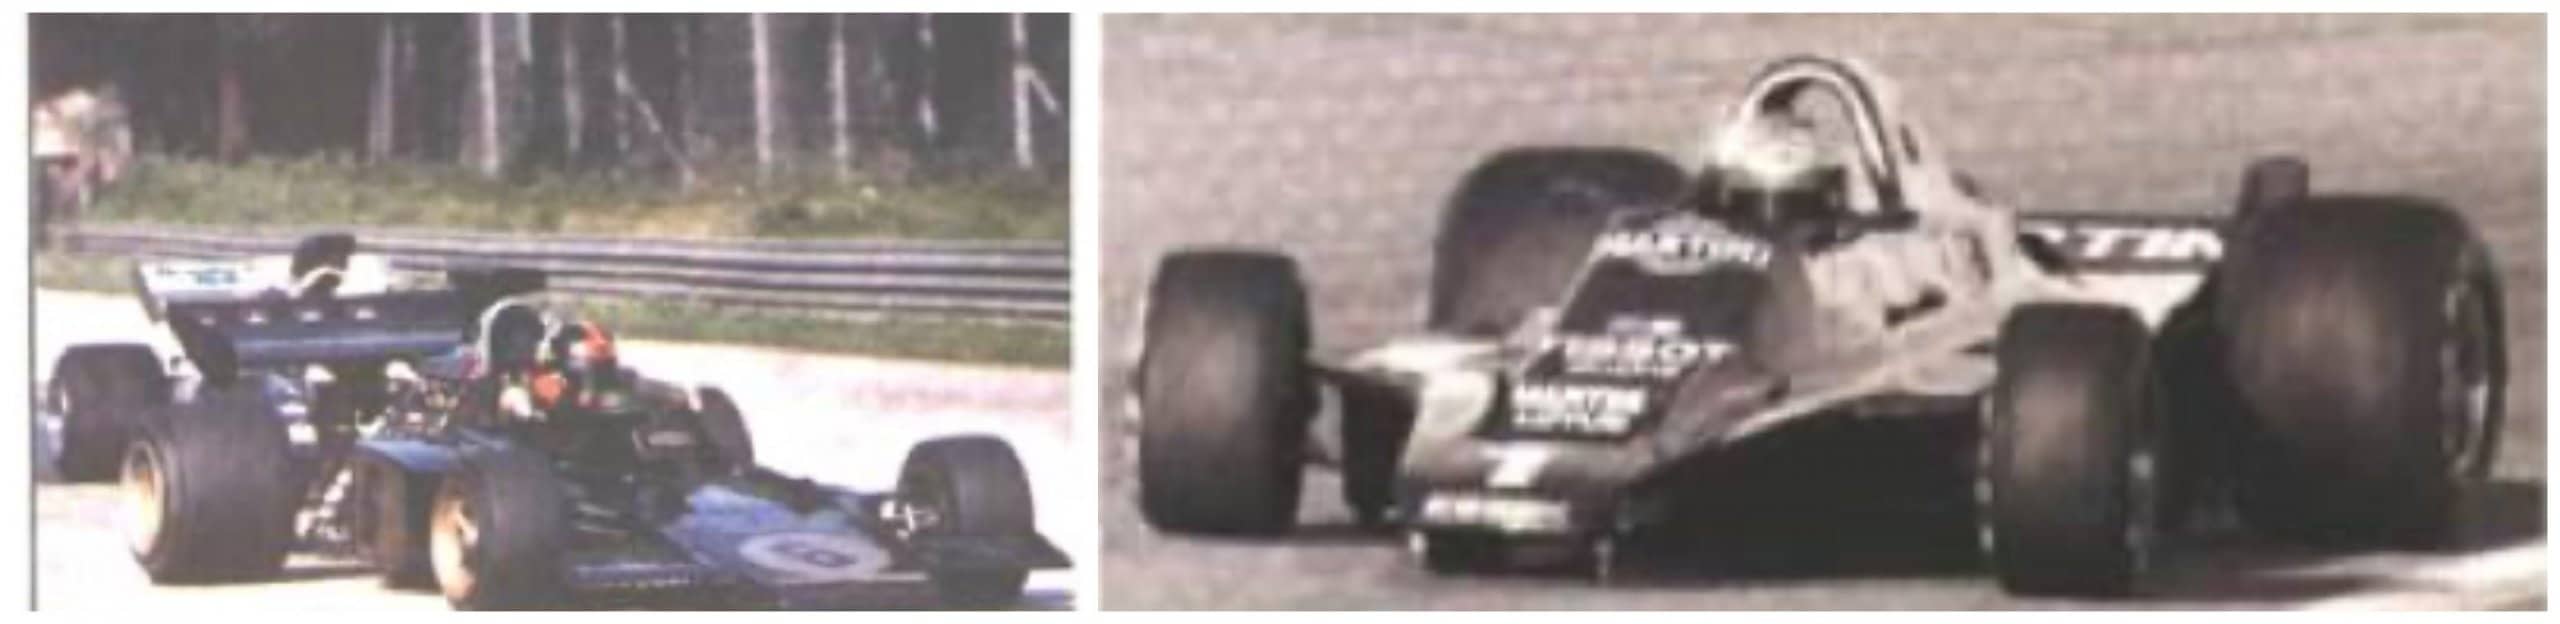 F1 Lotus 1970